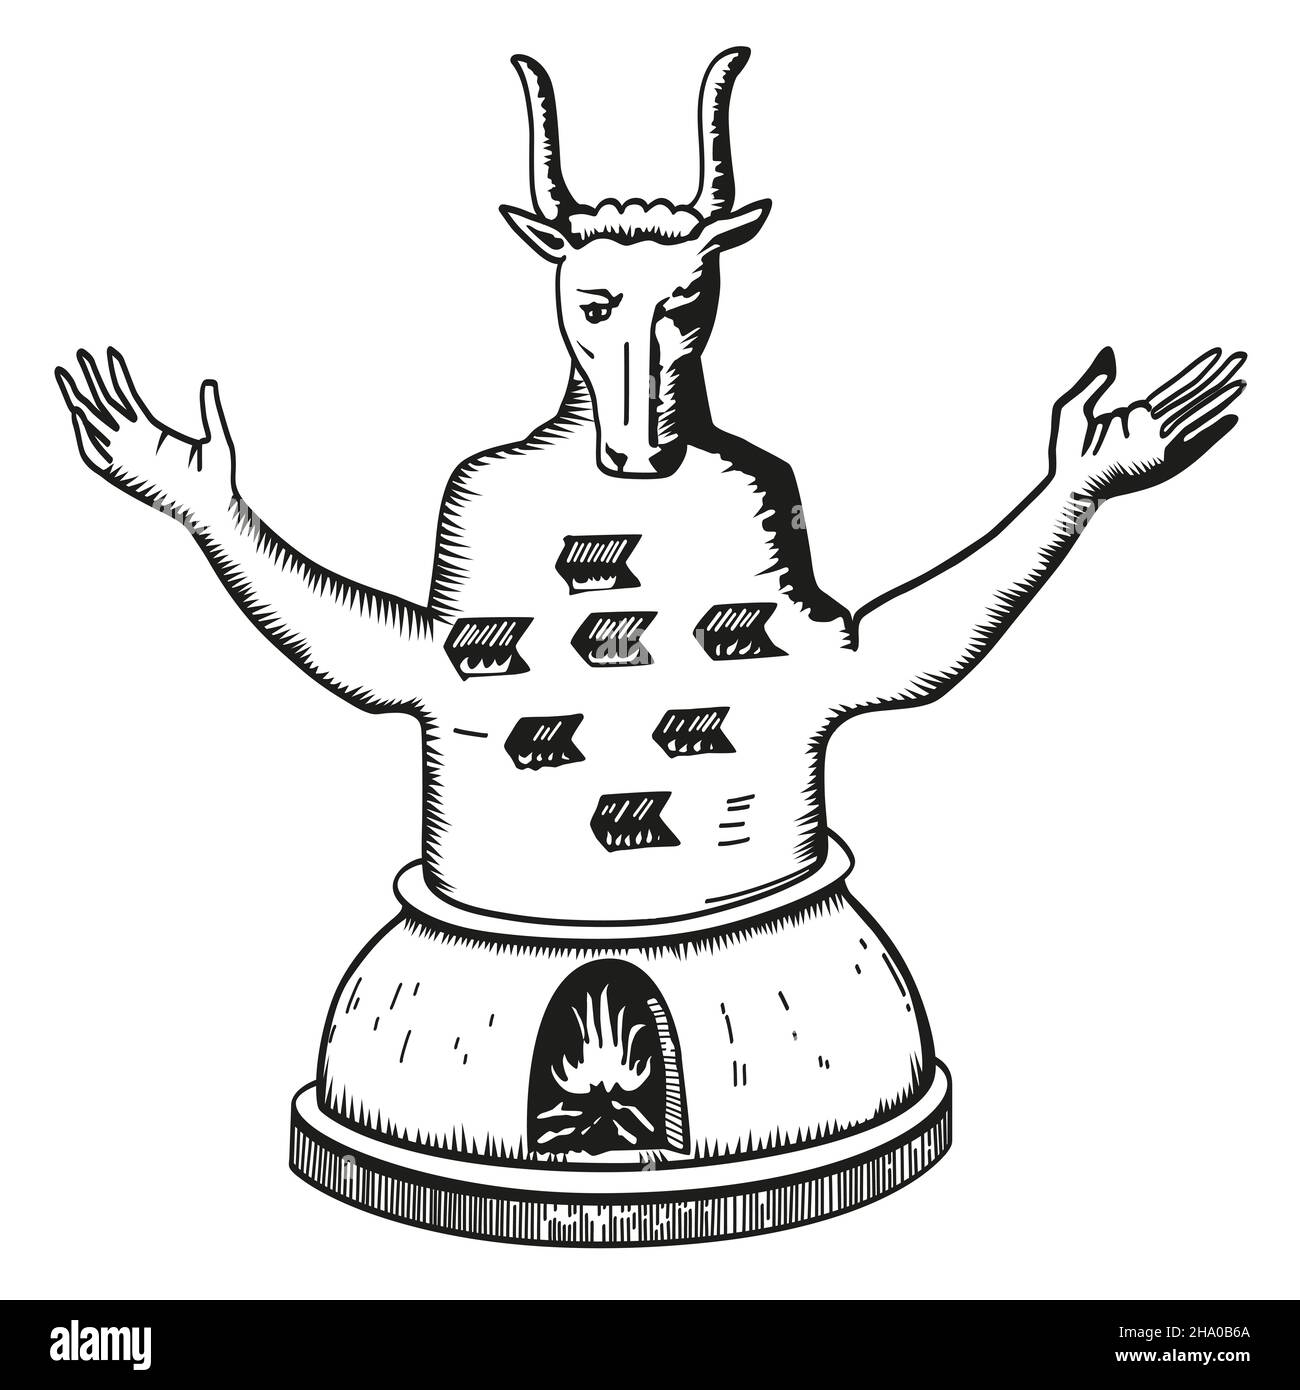 Moloch, également connu sous le nom de Molech ou Melek.Une divinité païenne, depuis la période médiévale décrite comme un idole humanoïde à tête de taureau, avec des bras étirés. Banque D'Images